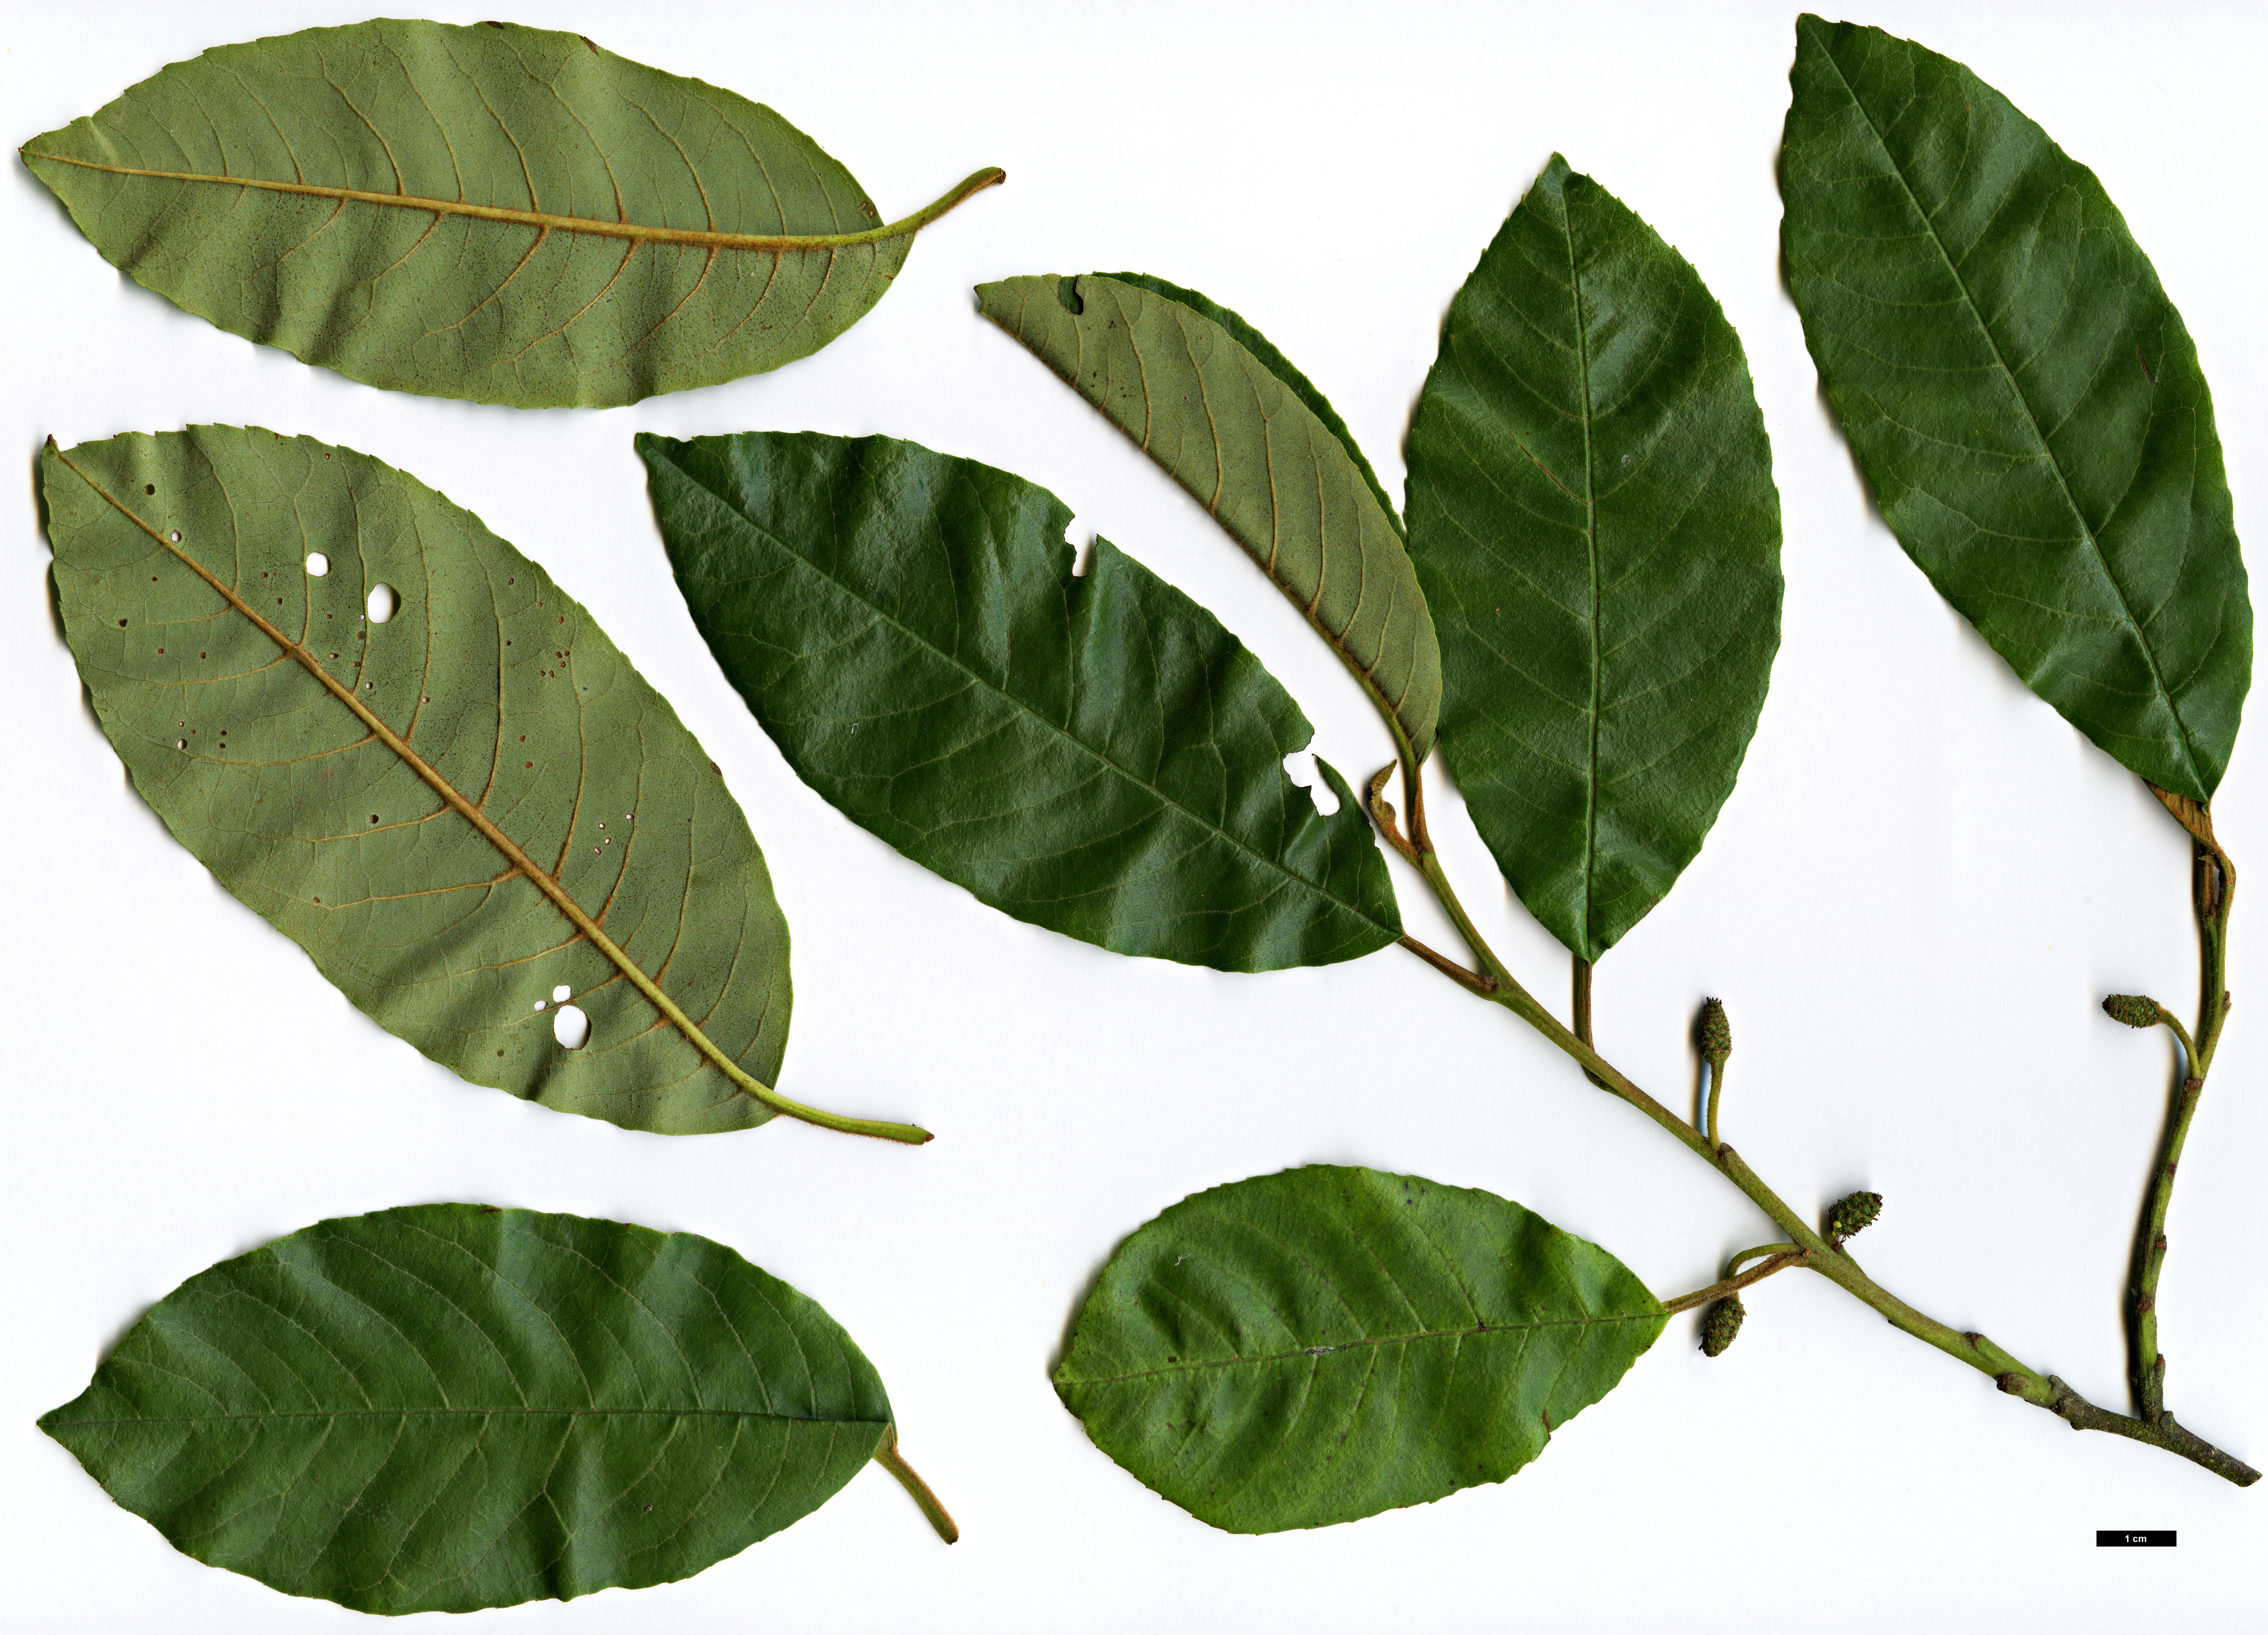 High resolution image: Family: Betulaceae - Genus: Alnus - Taxon: ferdinandi-coburgii